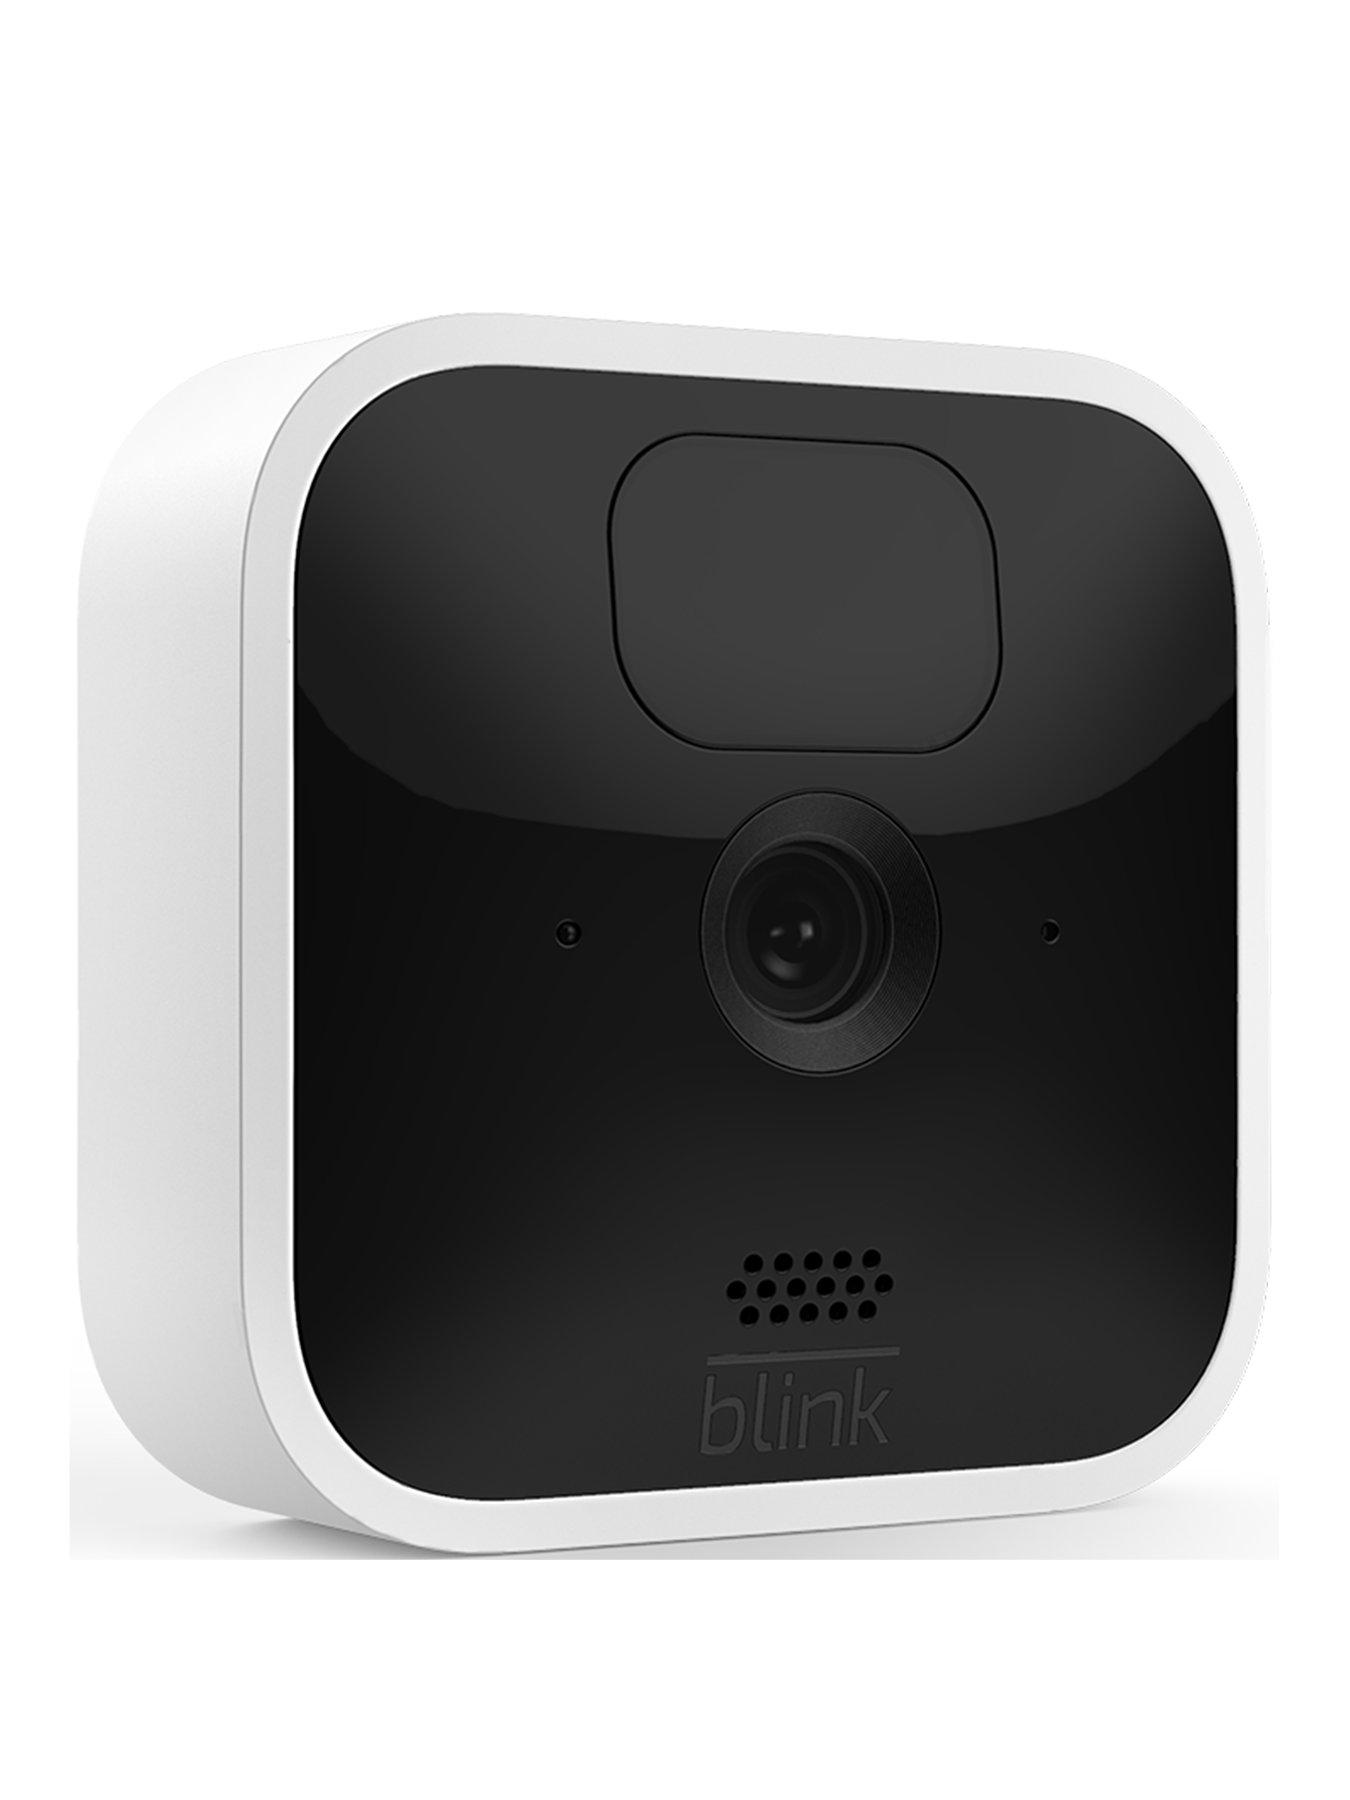 Camera an ninh không dây Blink Indoor của Amazon là sự lựa chọn hoàn hảo cho gia đình bạn. Với độ phân giải HD và thời gian sử dụng lên đến 2 năm, bạn có thể yên tâm và an tâm trong hơn. Hãy cùng xem ảnh liên quan để có trải nghiệm tốt nhất.